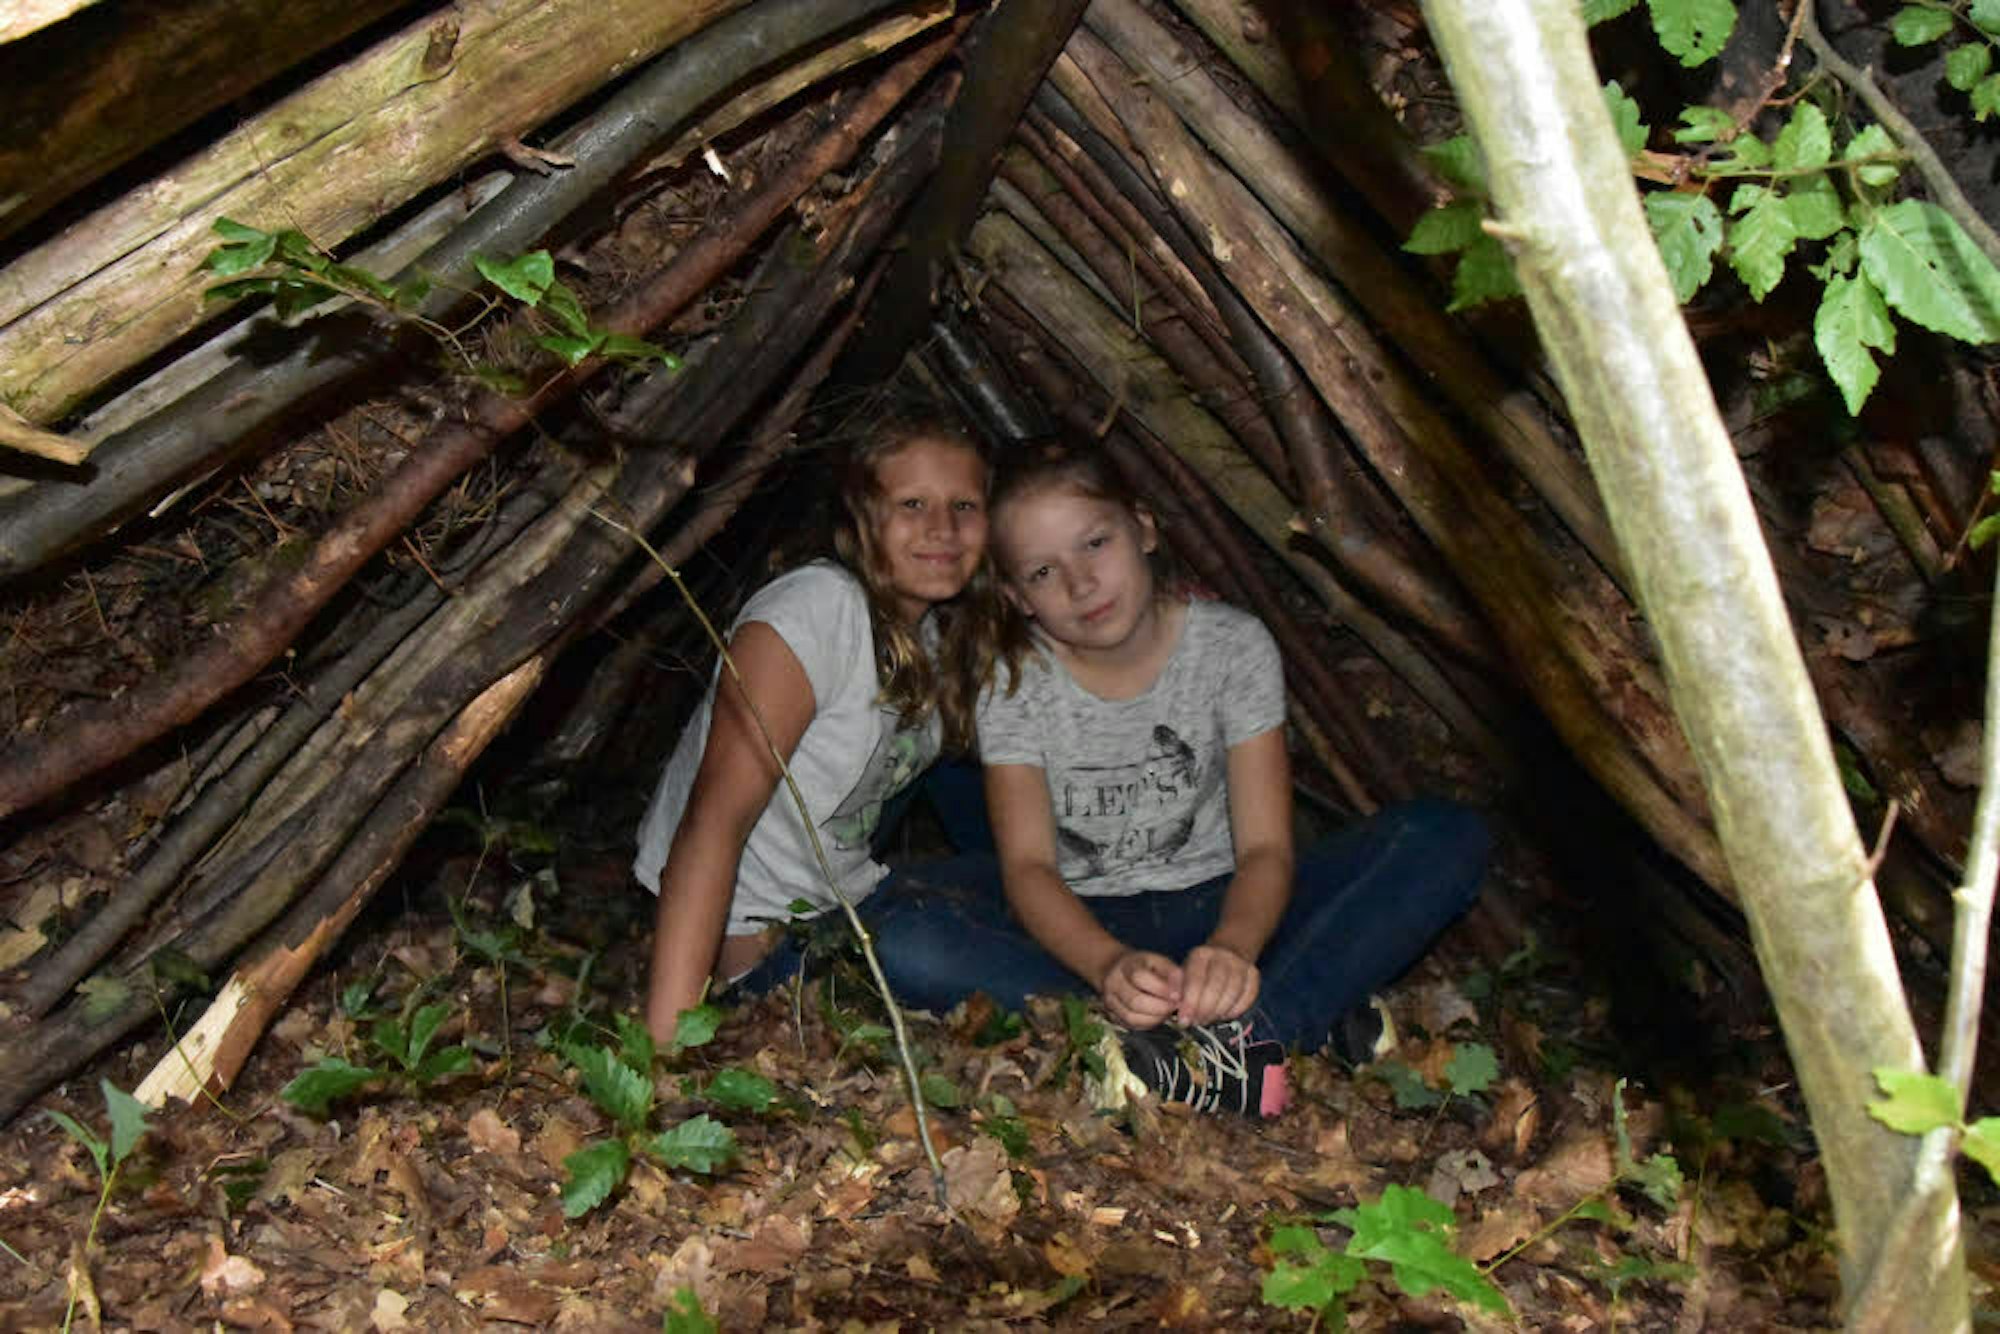 Die selbst gebaute Hütte testeten Josefine und Paulina (beide elf Jahre alt). Sie eigne sich sogar zum trockenen Übernachten, hieß es.